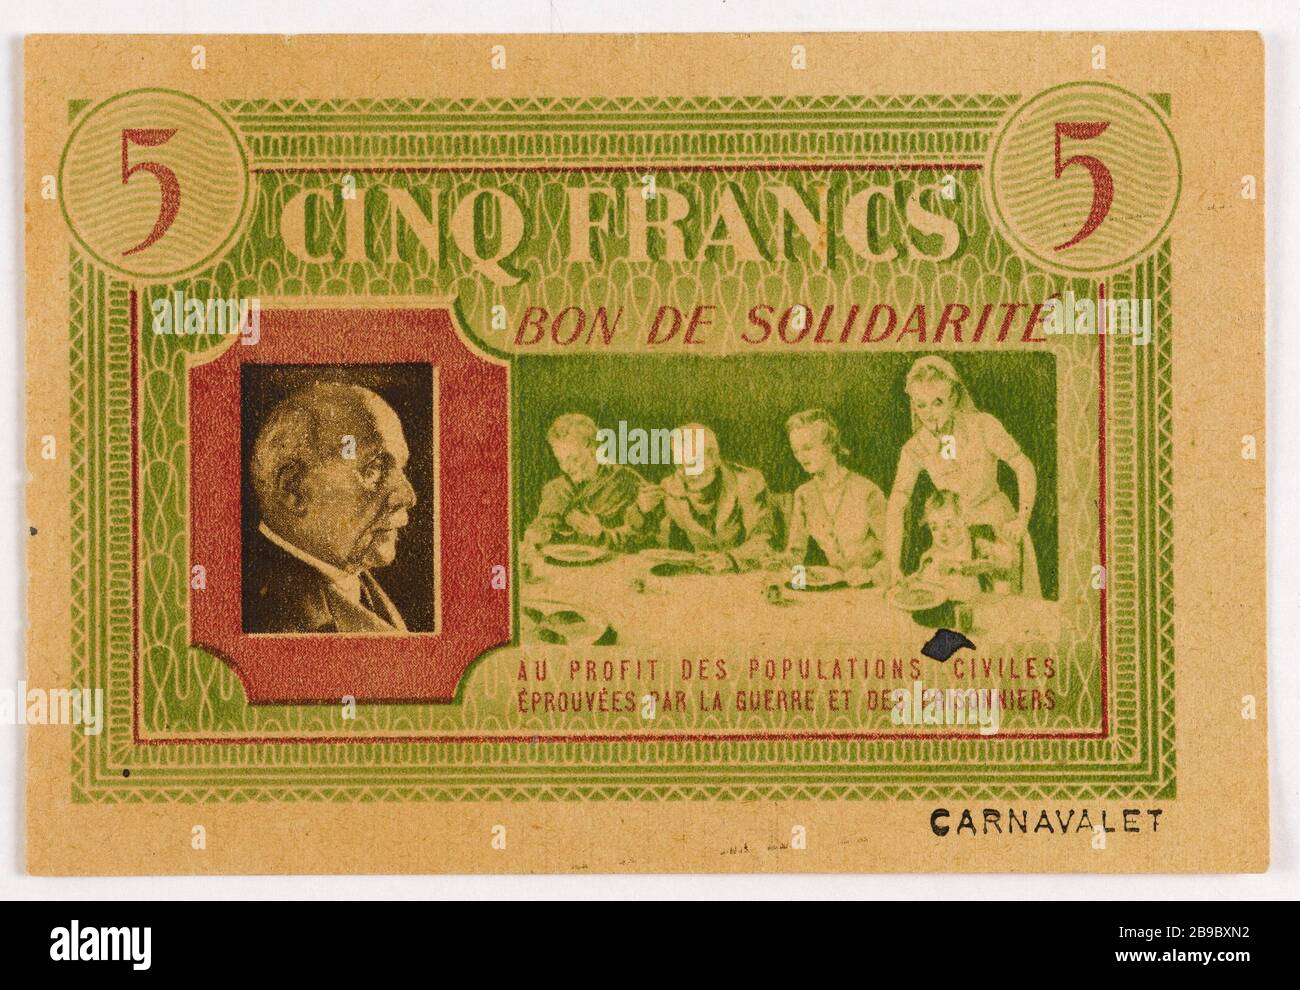 Good Solidarity 5 francs department of Seine 1940. Anonyme. Bon de solidarité de 5 francs, département de la Seine, 1940. Typographie. Paris, musée Carnavalet. Stock Photo